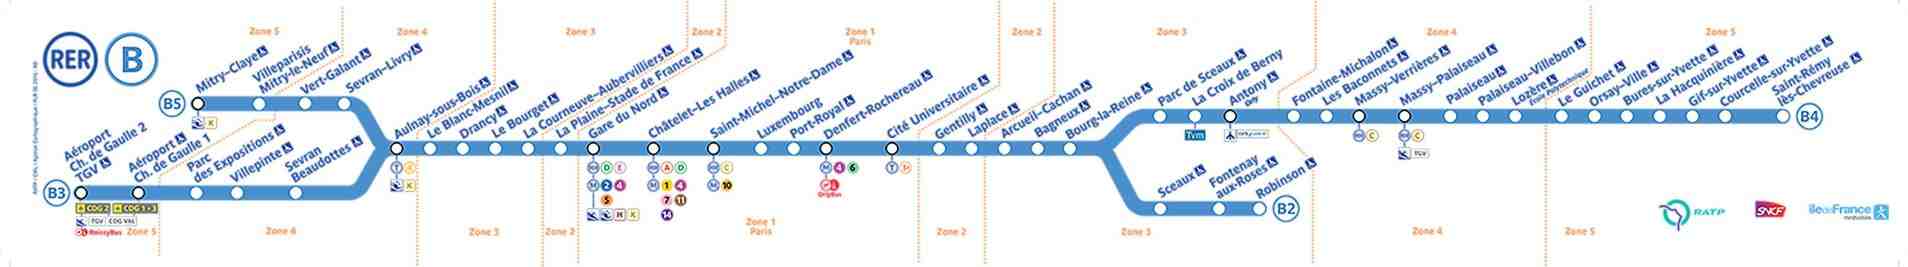 RER B : du nouveau pour les trains directs entre Gare du Nord et Roissy Charles-de-Gaulle